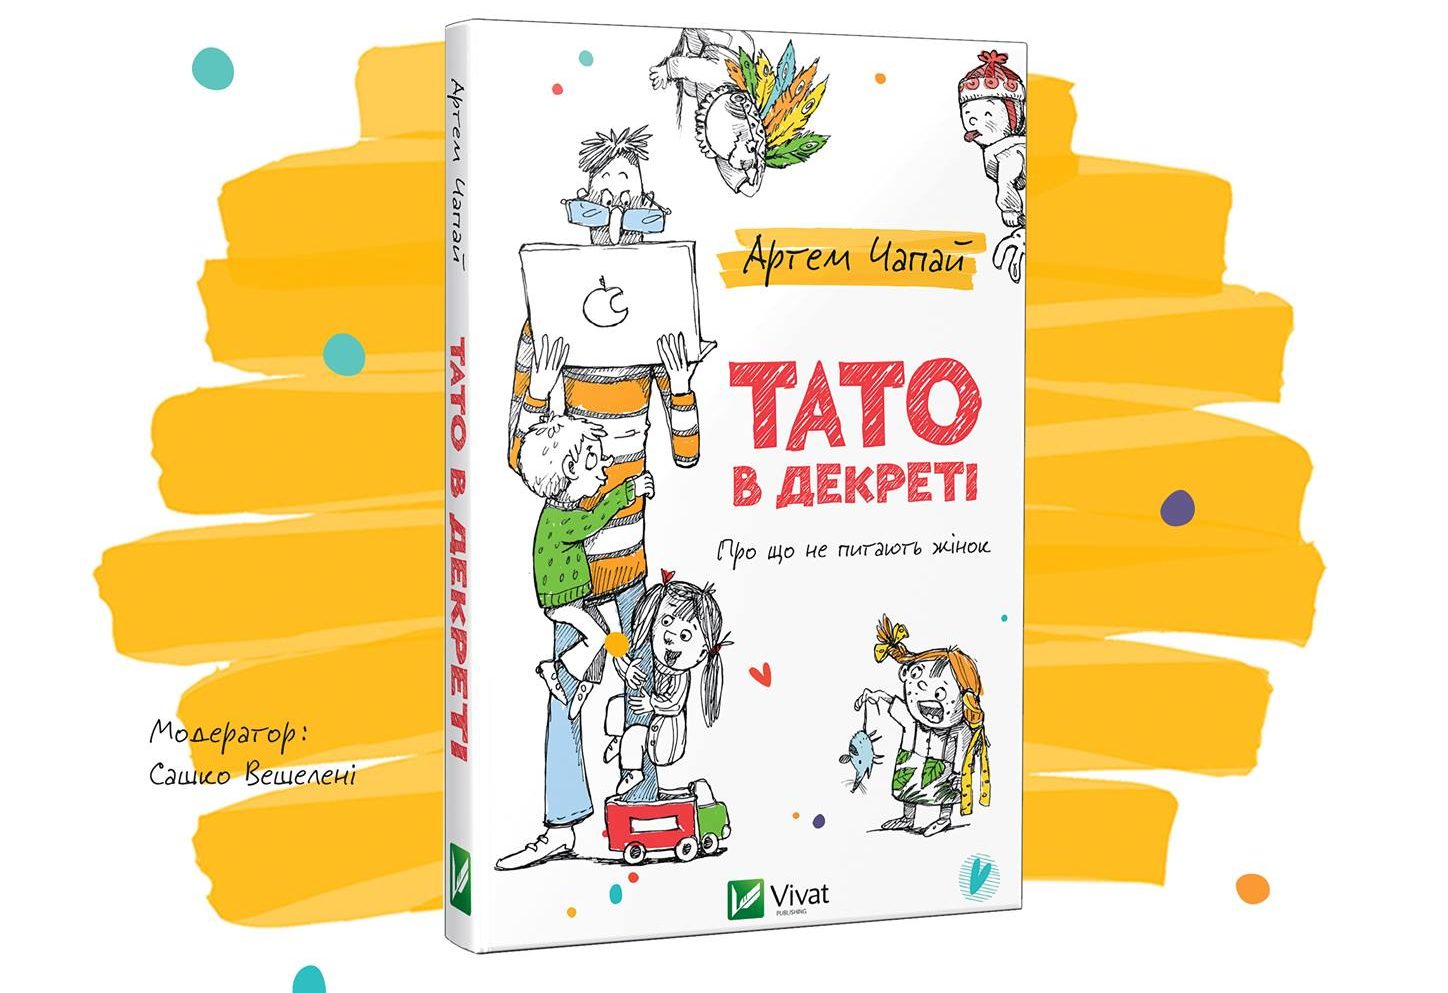 «Тато в декреті»: у Вінниці презентують книгу про складнощі батьківства